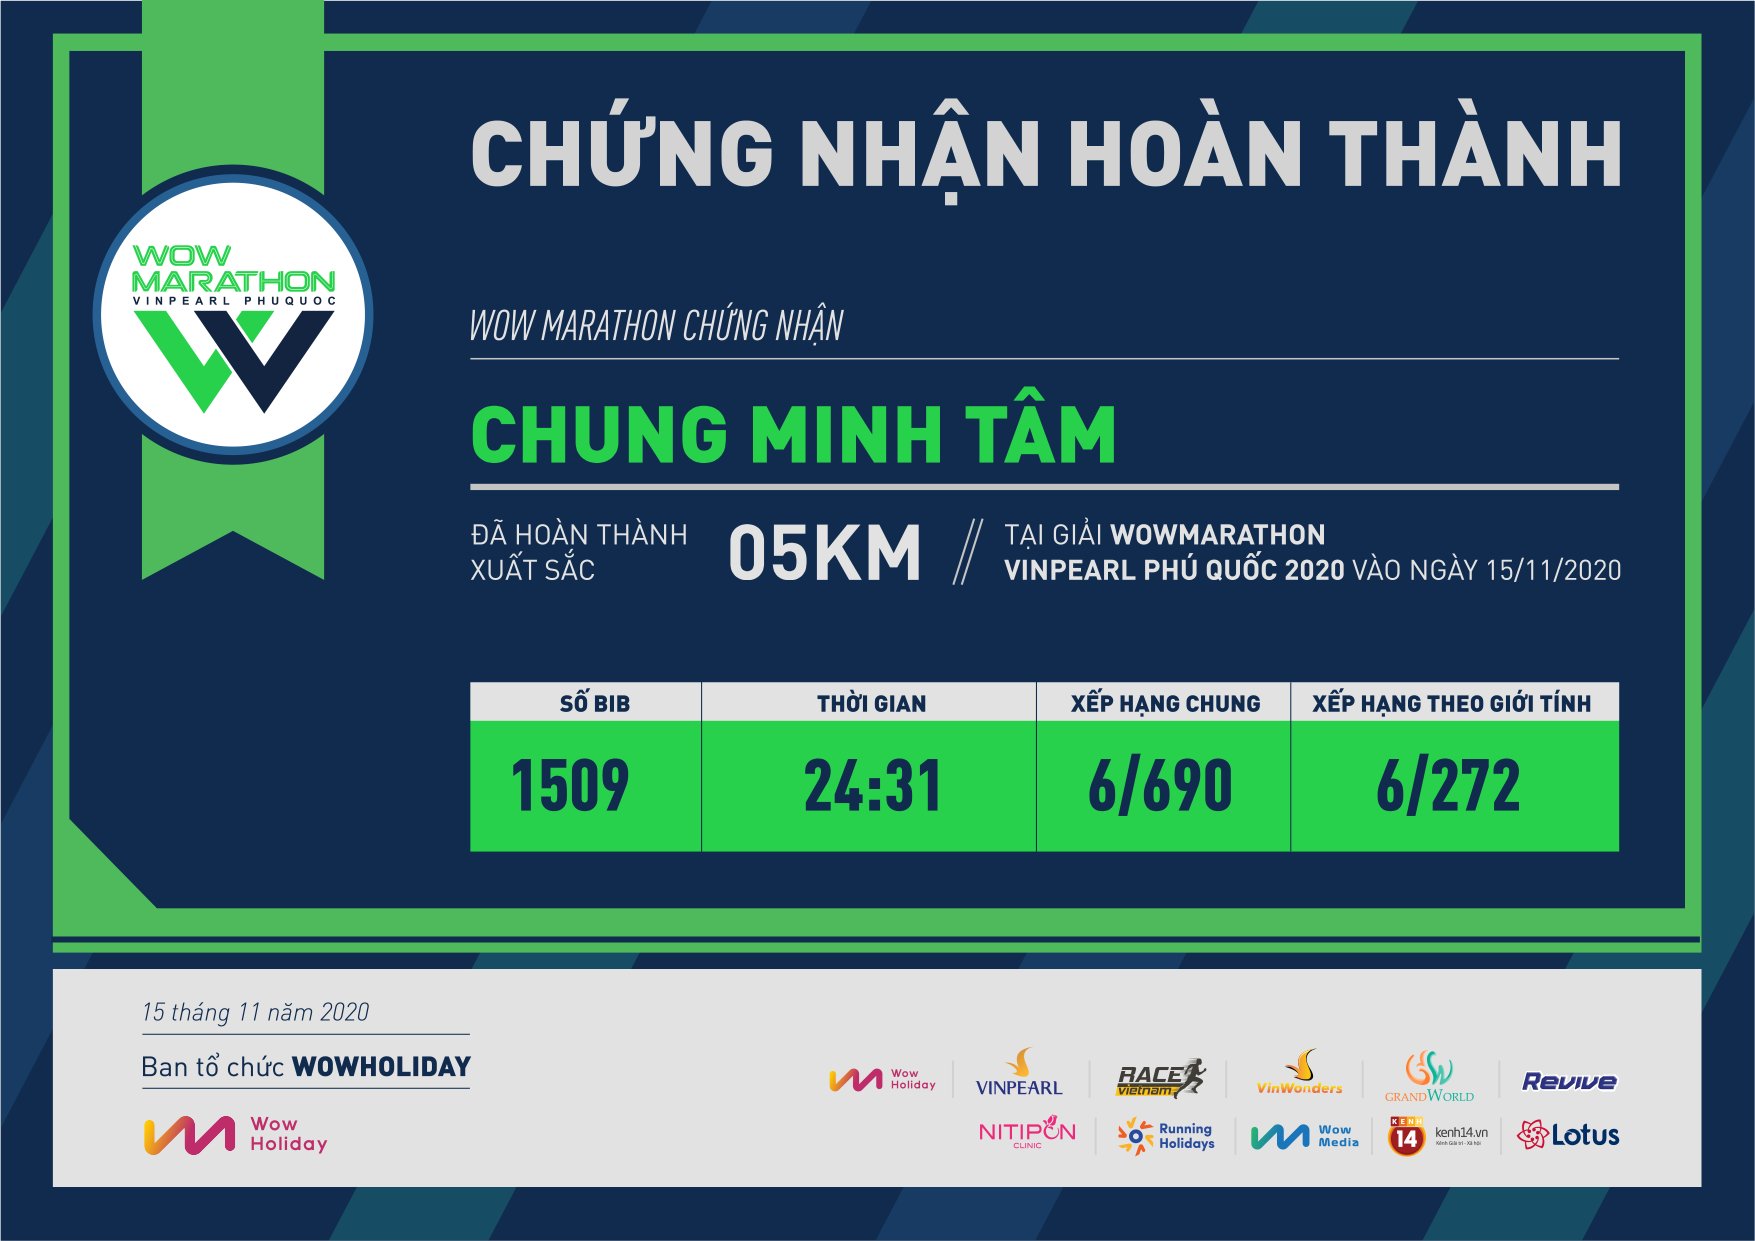 1509 - Chung Minh Tâm